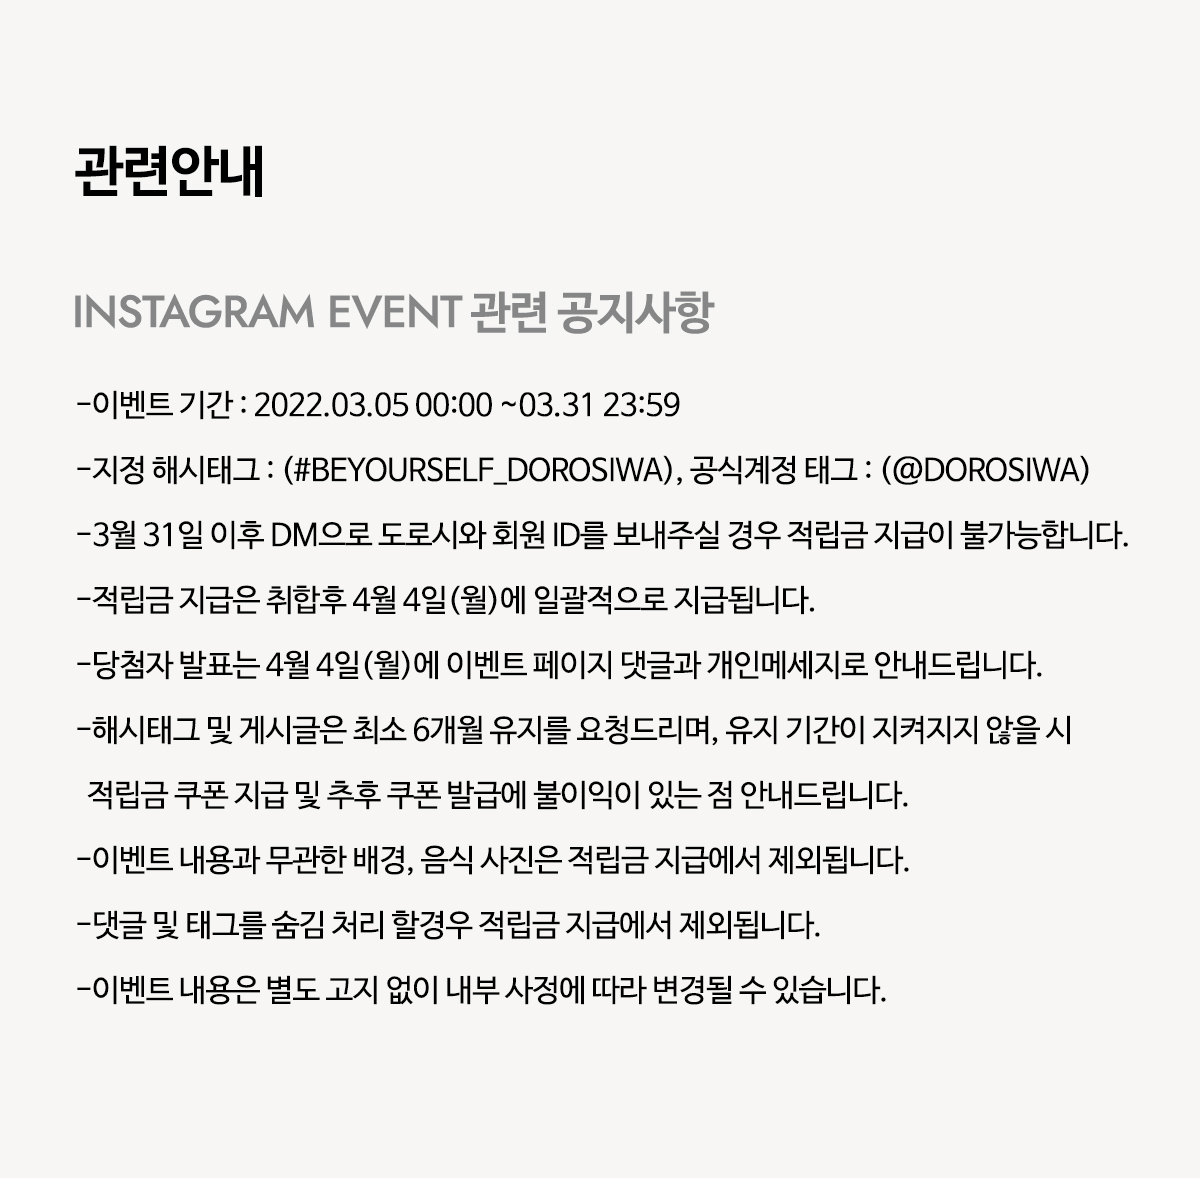 Event notice